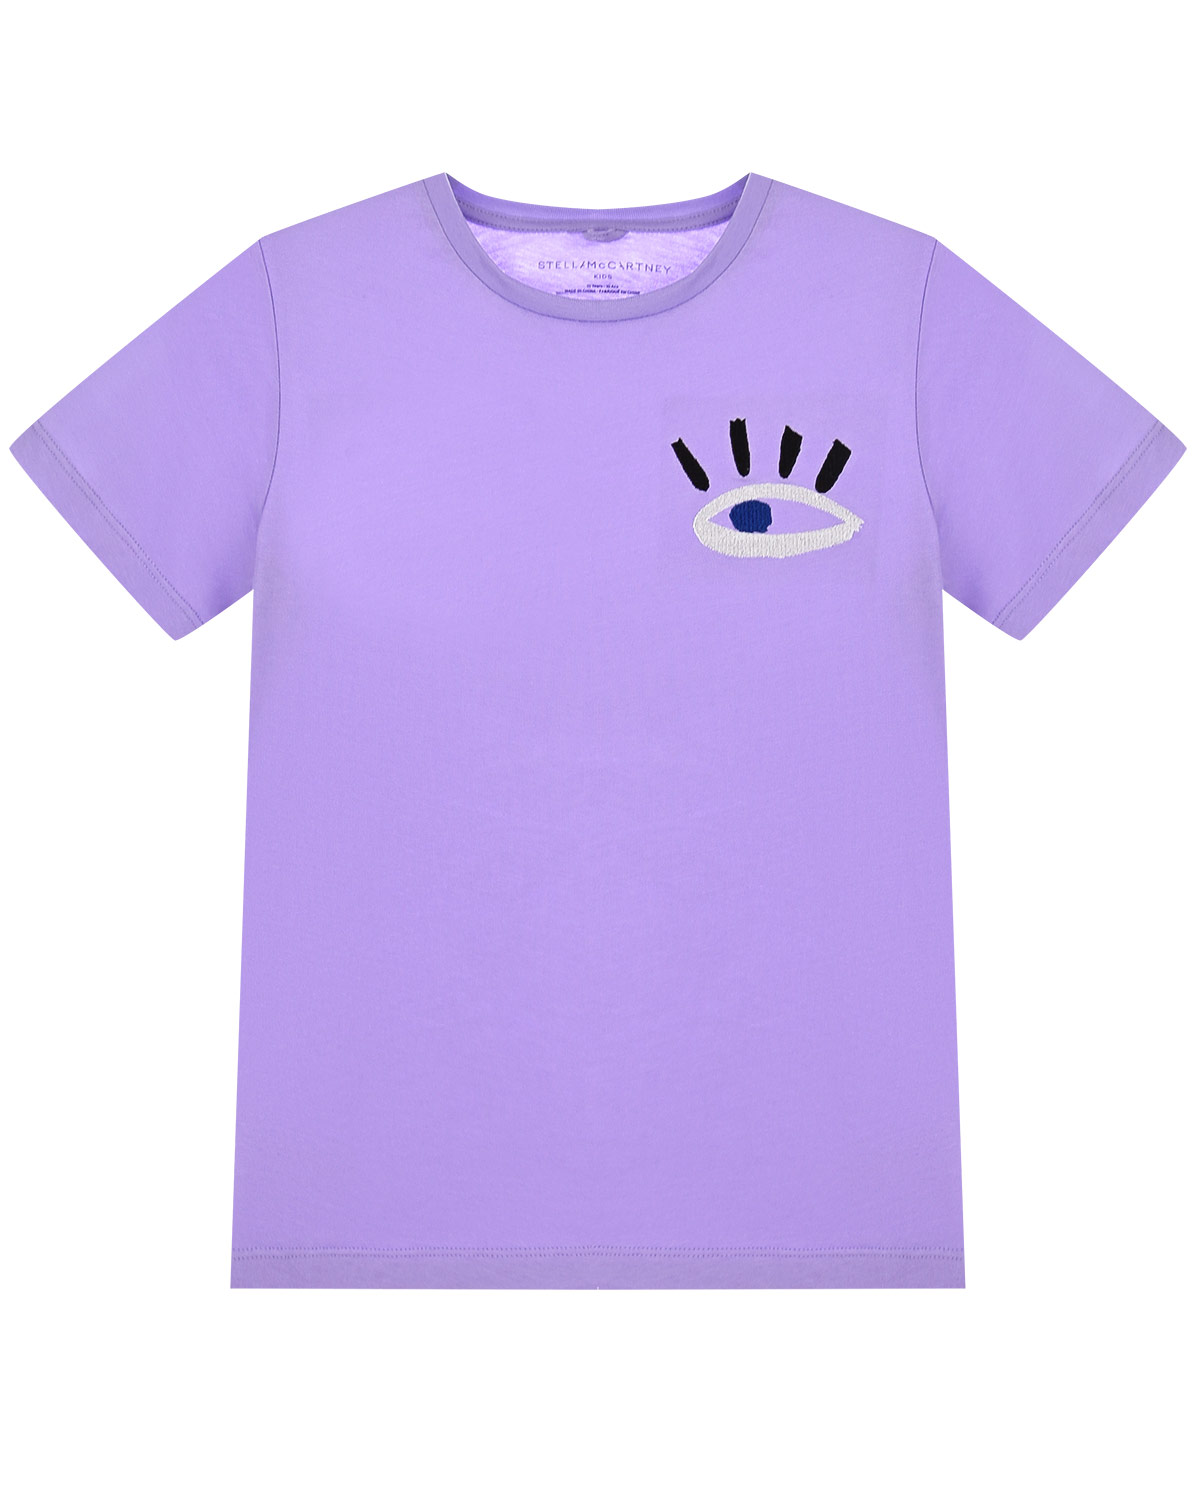 Футболка фиолетовая купить. Фиолетовая футболка. Сиреневая футболка. Футболка для девочки фиолетовая. Фиолетовая футболка детская.